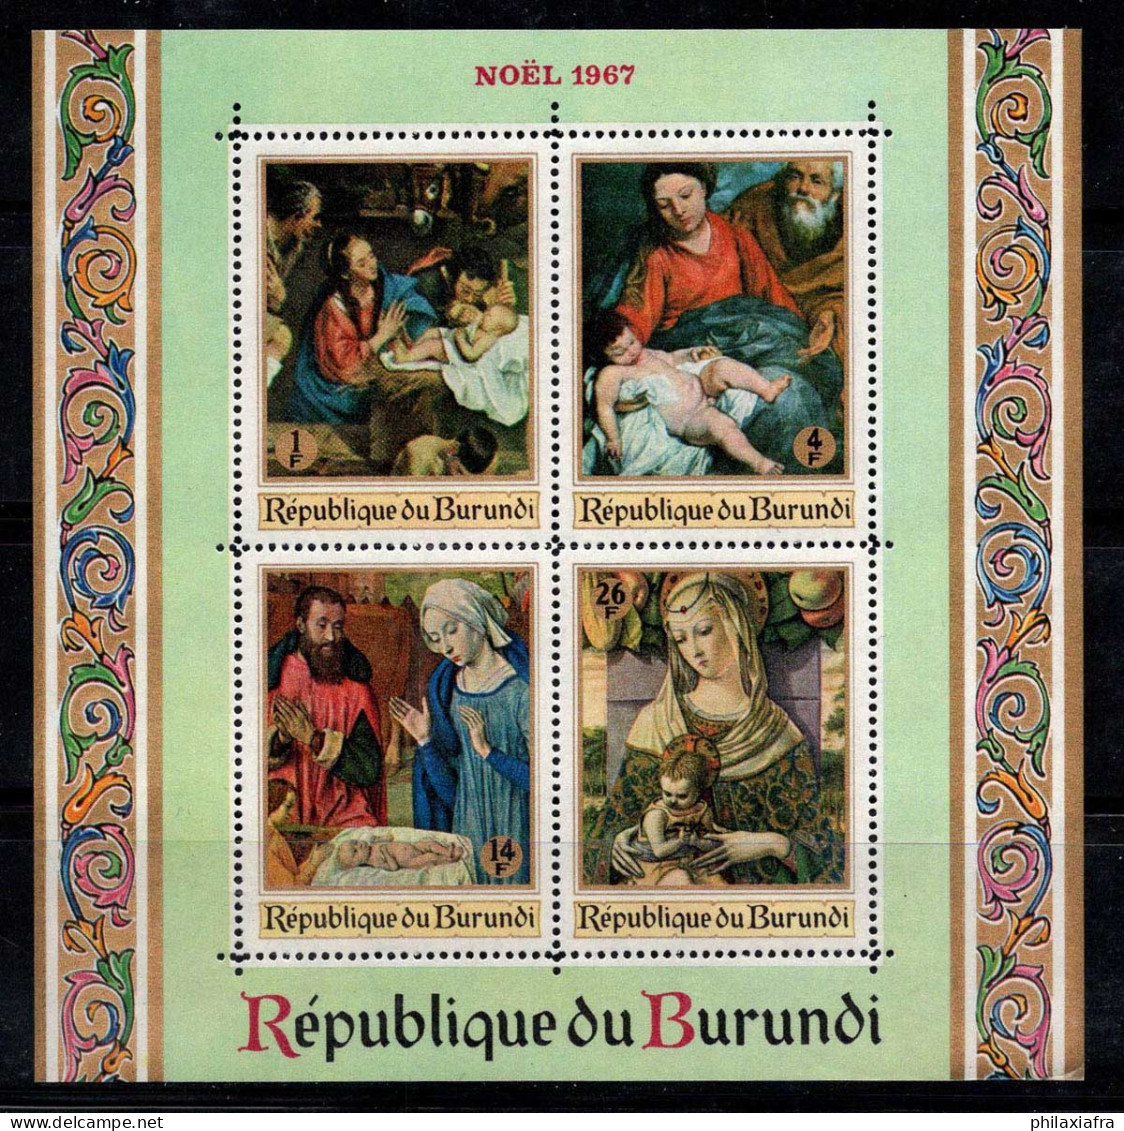 Burundi 1967 SG MS337 Bloc Feuillet 100% Neuf ** Noël, Peintures Religieuses - Ungebraucht